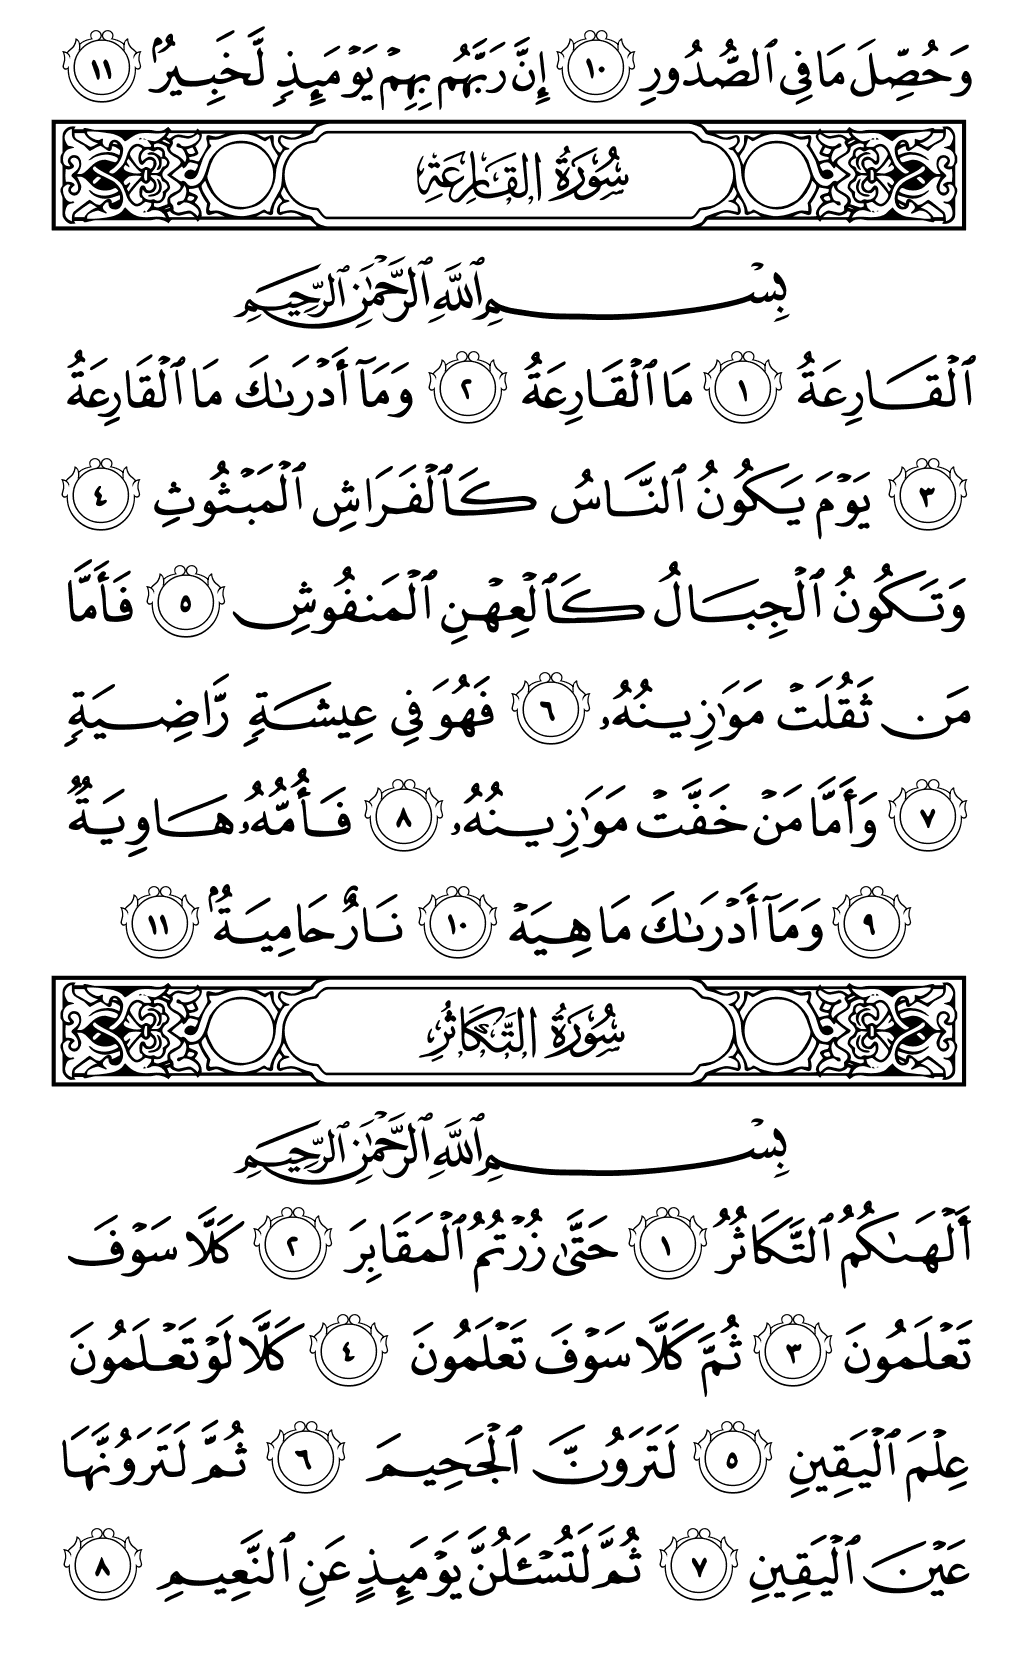 الصفحة رقم 600 من القرآن الكريم